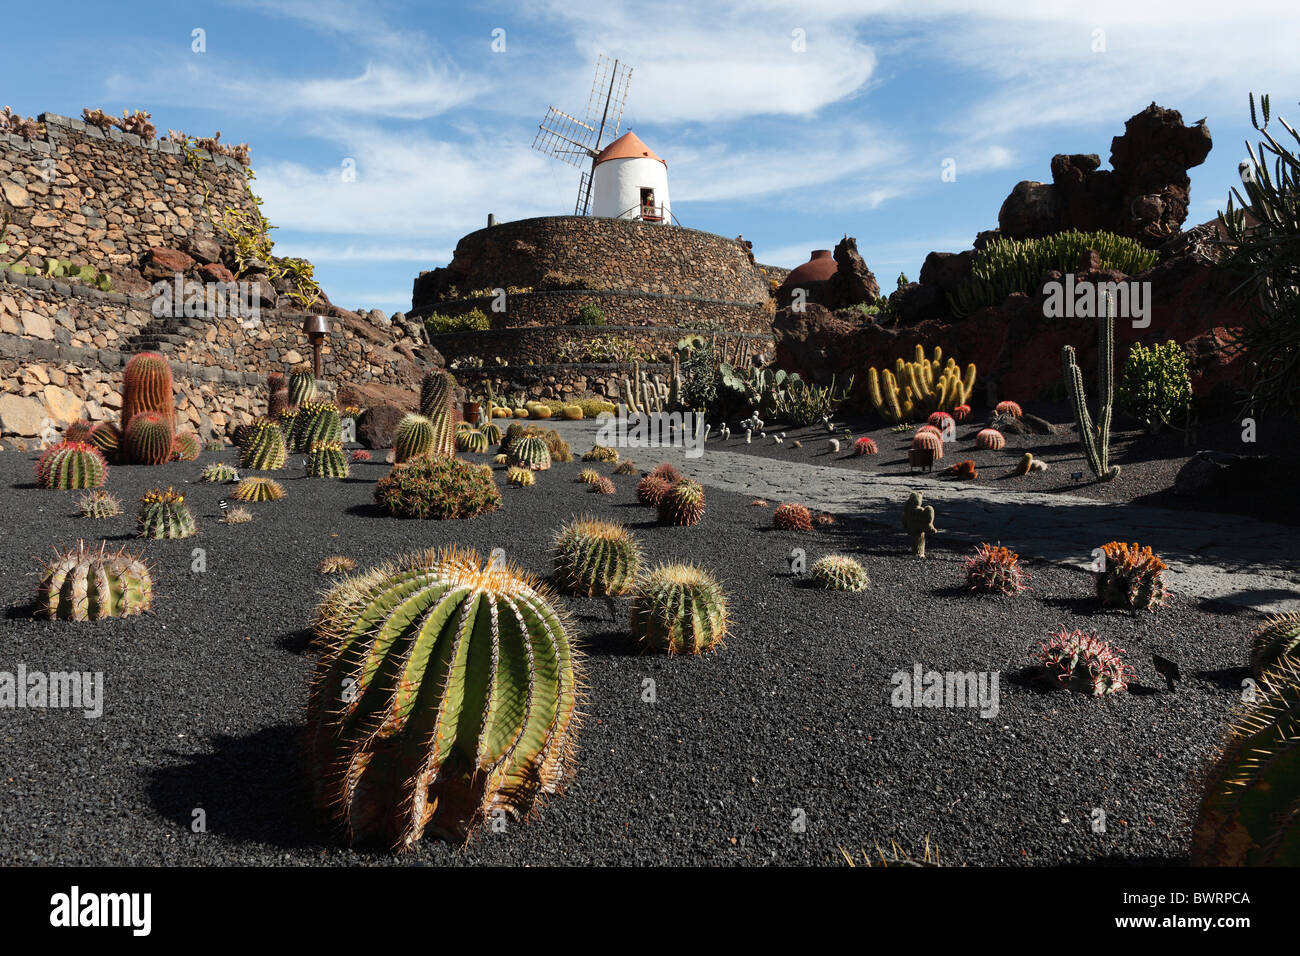 Jardin de cactus avec un moulin à vent, Jardín de cactus, conçue par César Manrique, Guatiza, Lanzarote, Canary Islands, Spain, Europe Banque D'Images